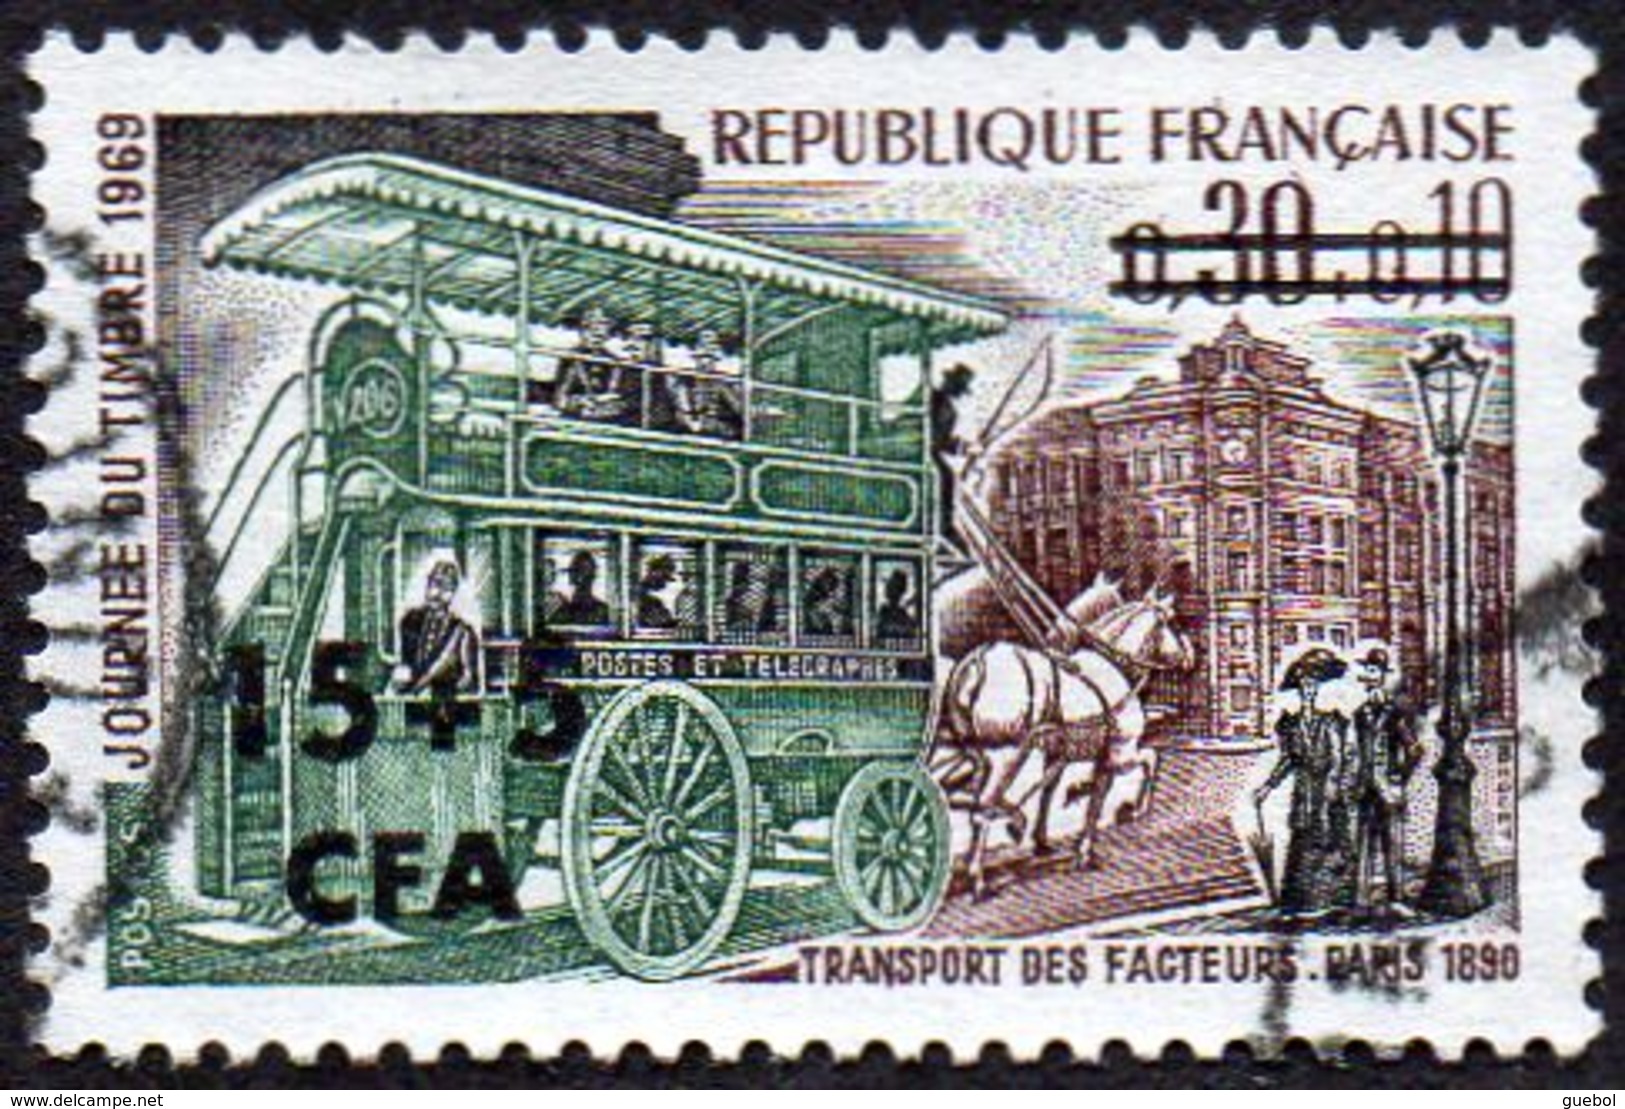 Réunion Obl. N° 383 Journée Du Timbre 69 - Omnibus De Transport Des Facteurs En 1890 - Gebraucht